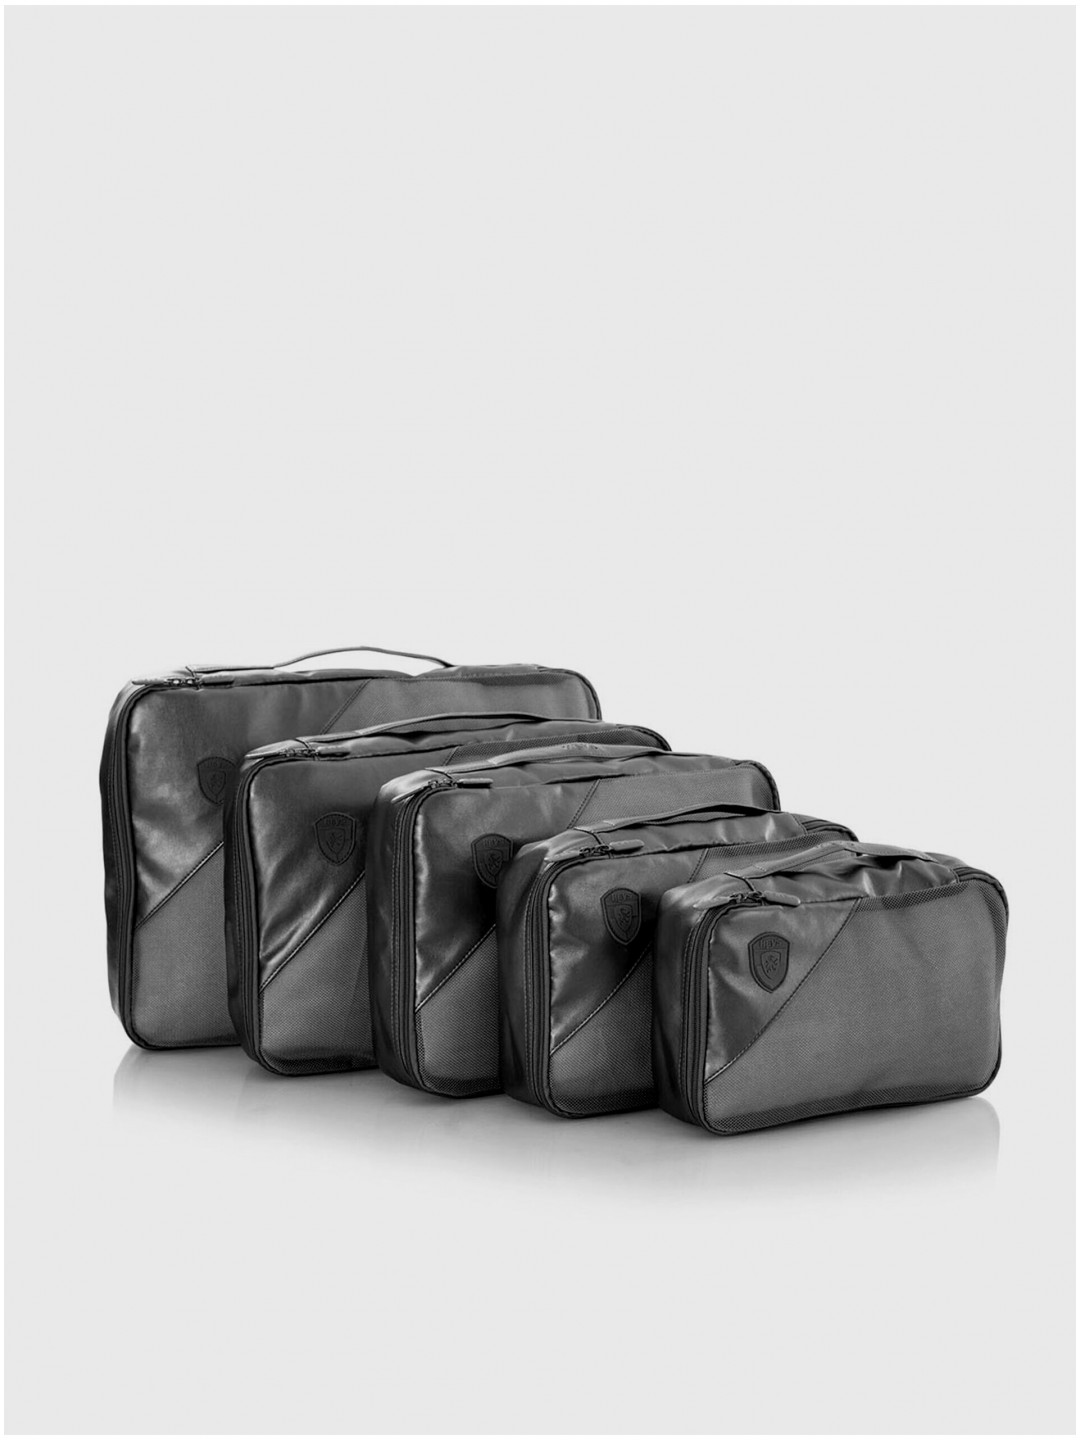 Sada pěti cestovních taštiček v šedé barvě Heys Metallic Packing Cube 5pc